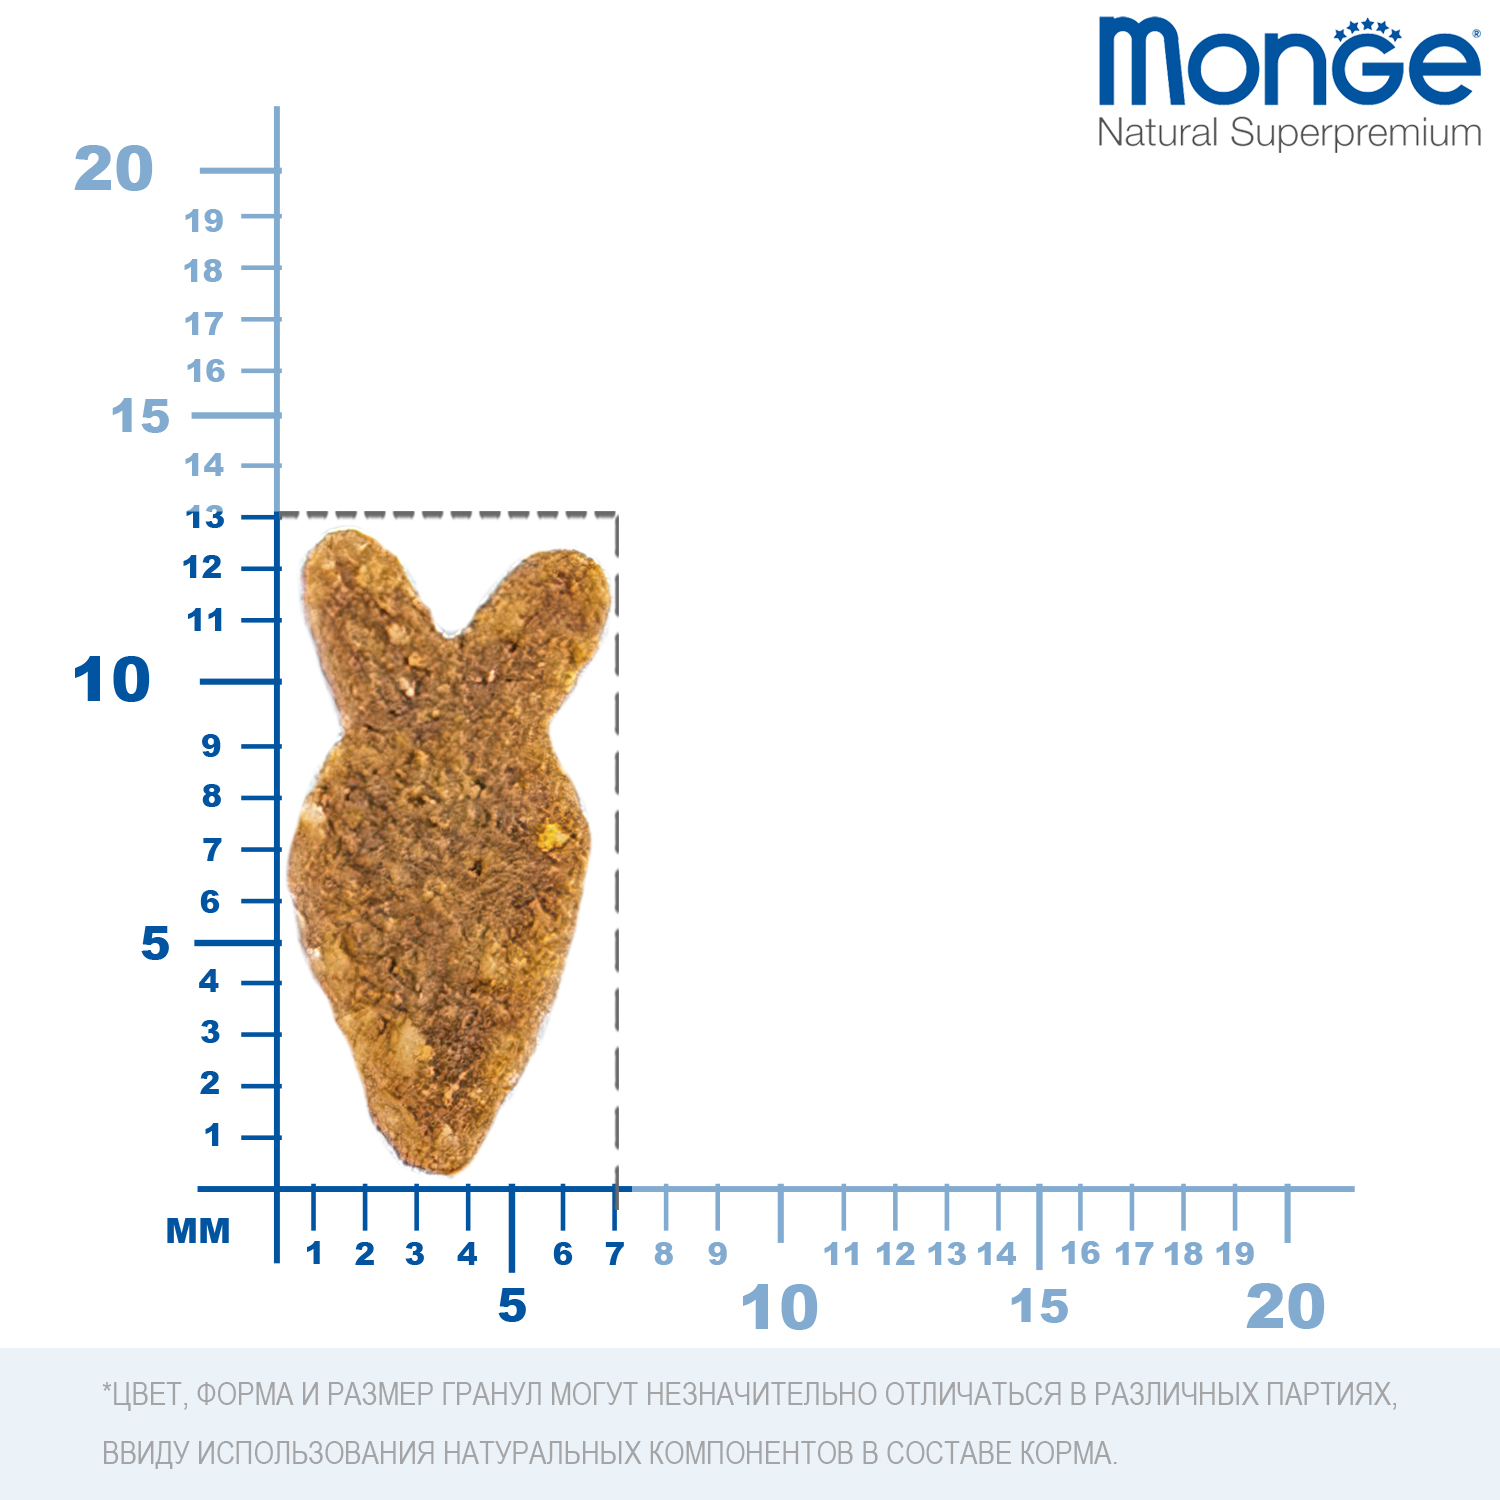 Сухой корм Monge Cat Speciality Line Monoprotein Adult для взрослых кошек, из лосося 10 кг